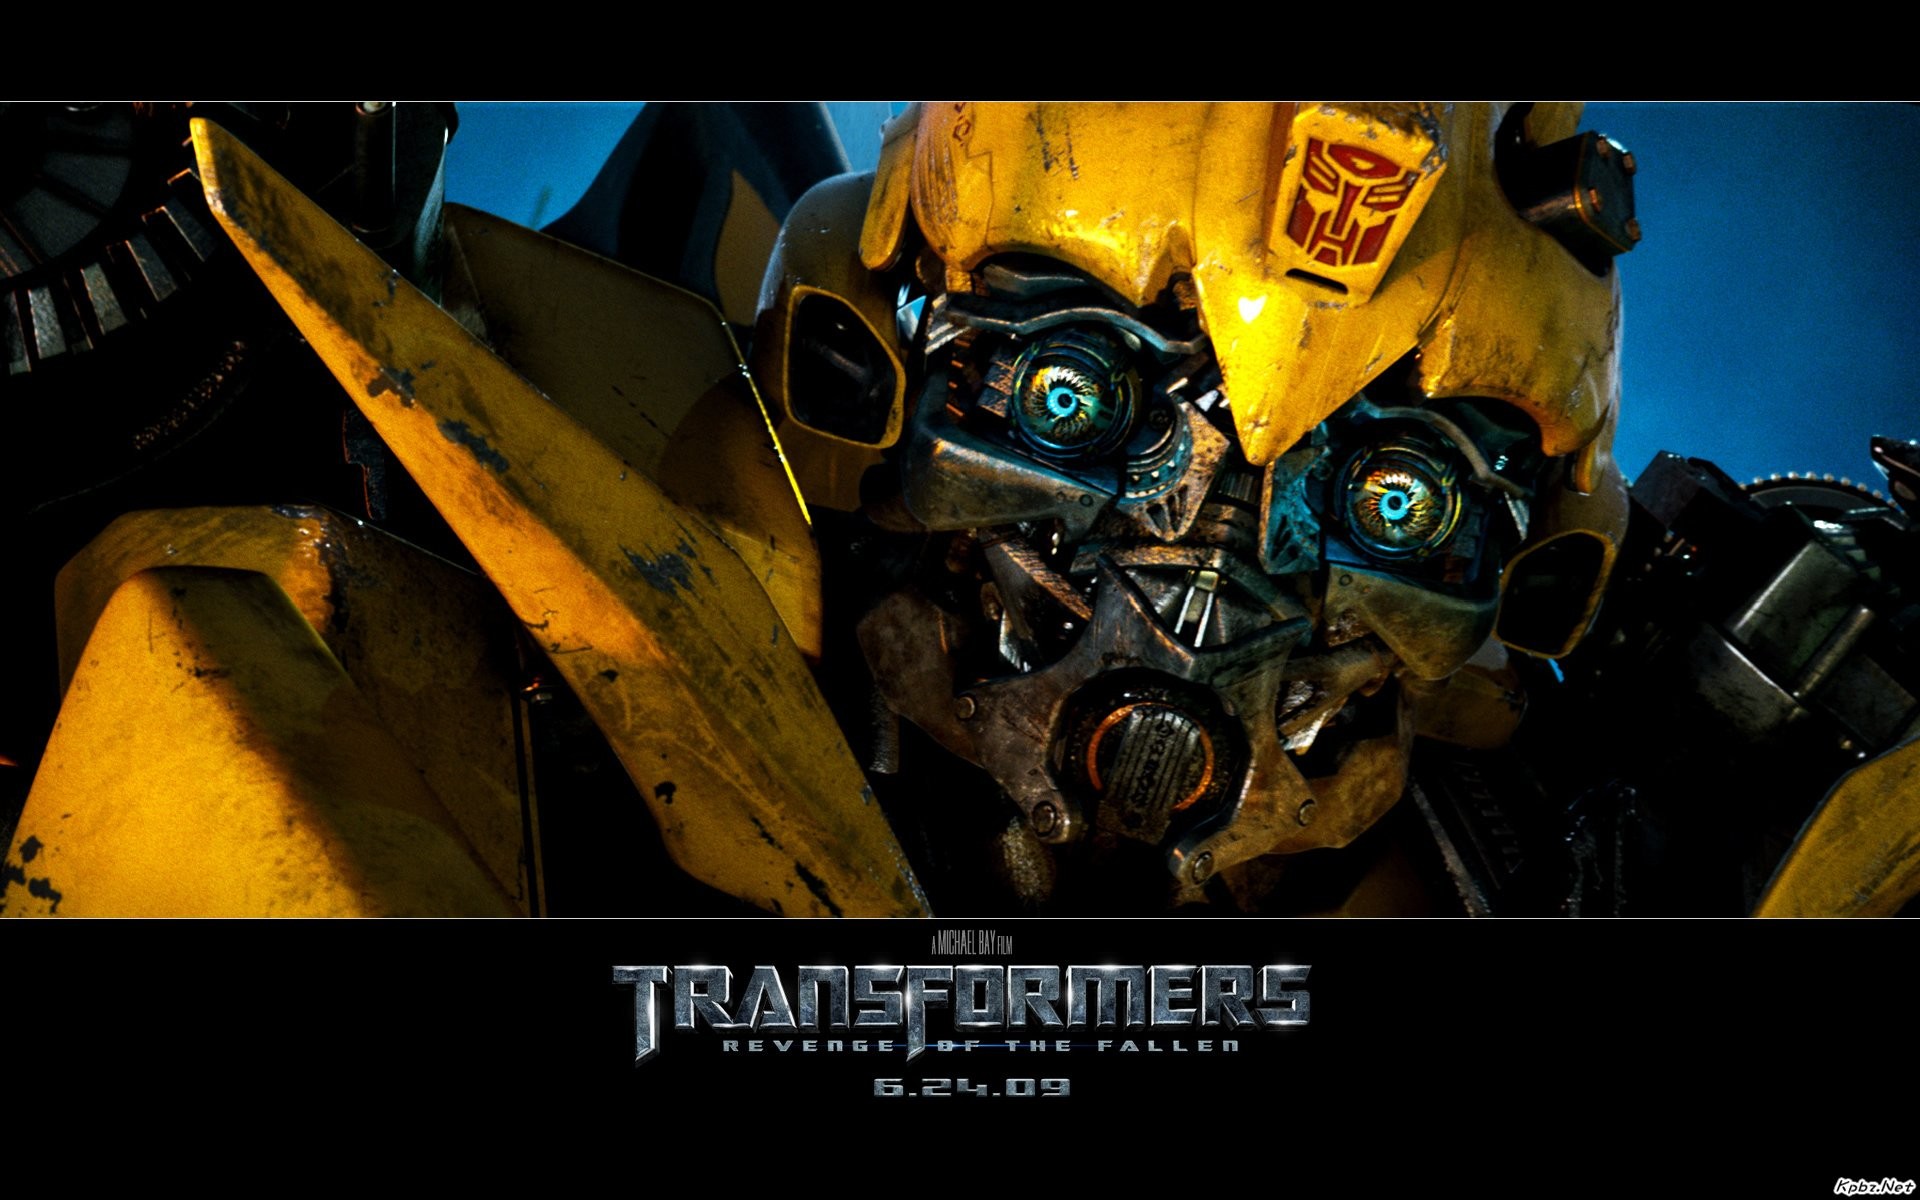 Transformers HD papel tapiz #7 - 1920x1200